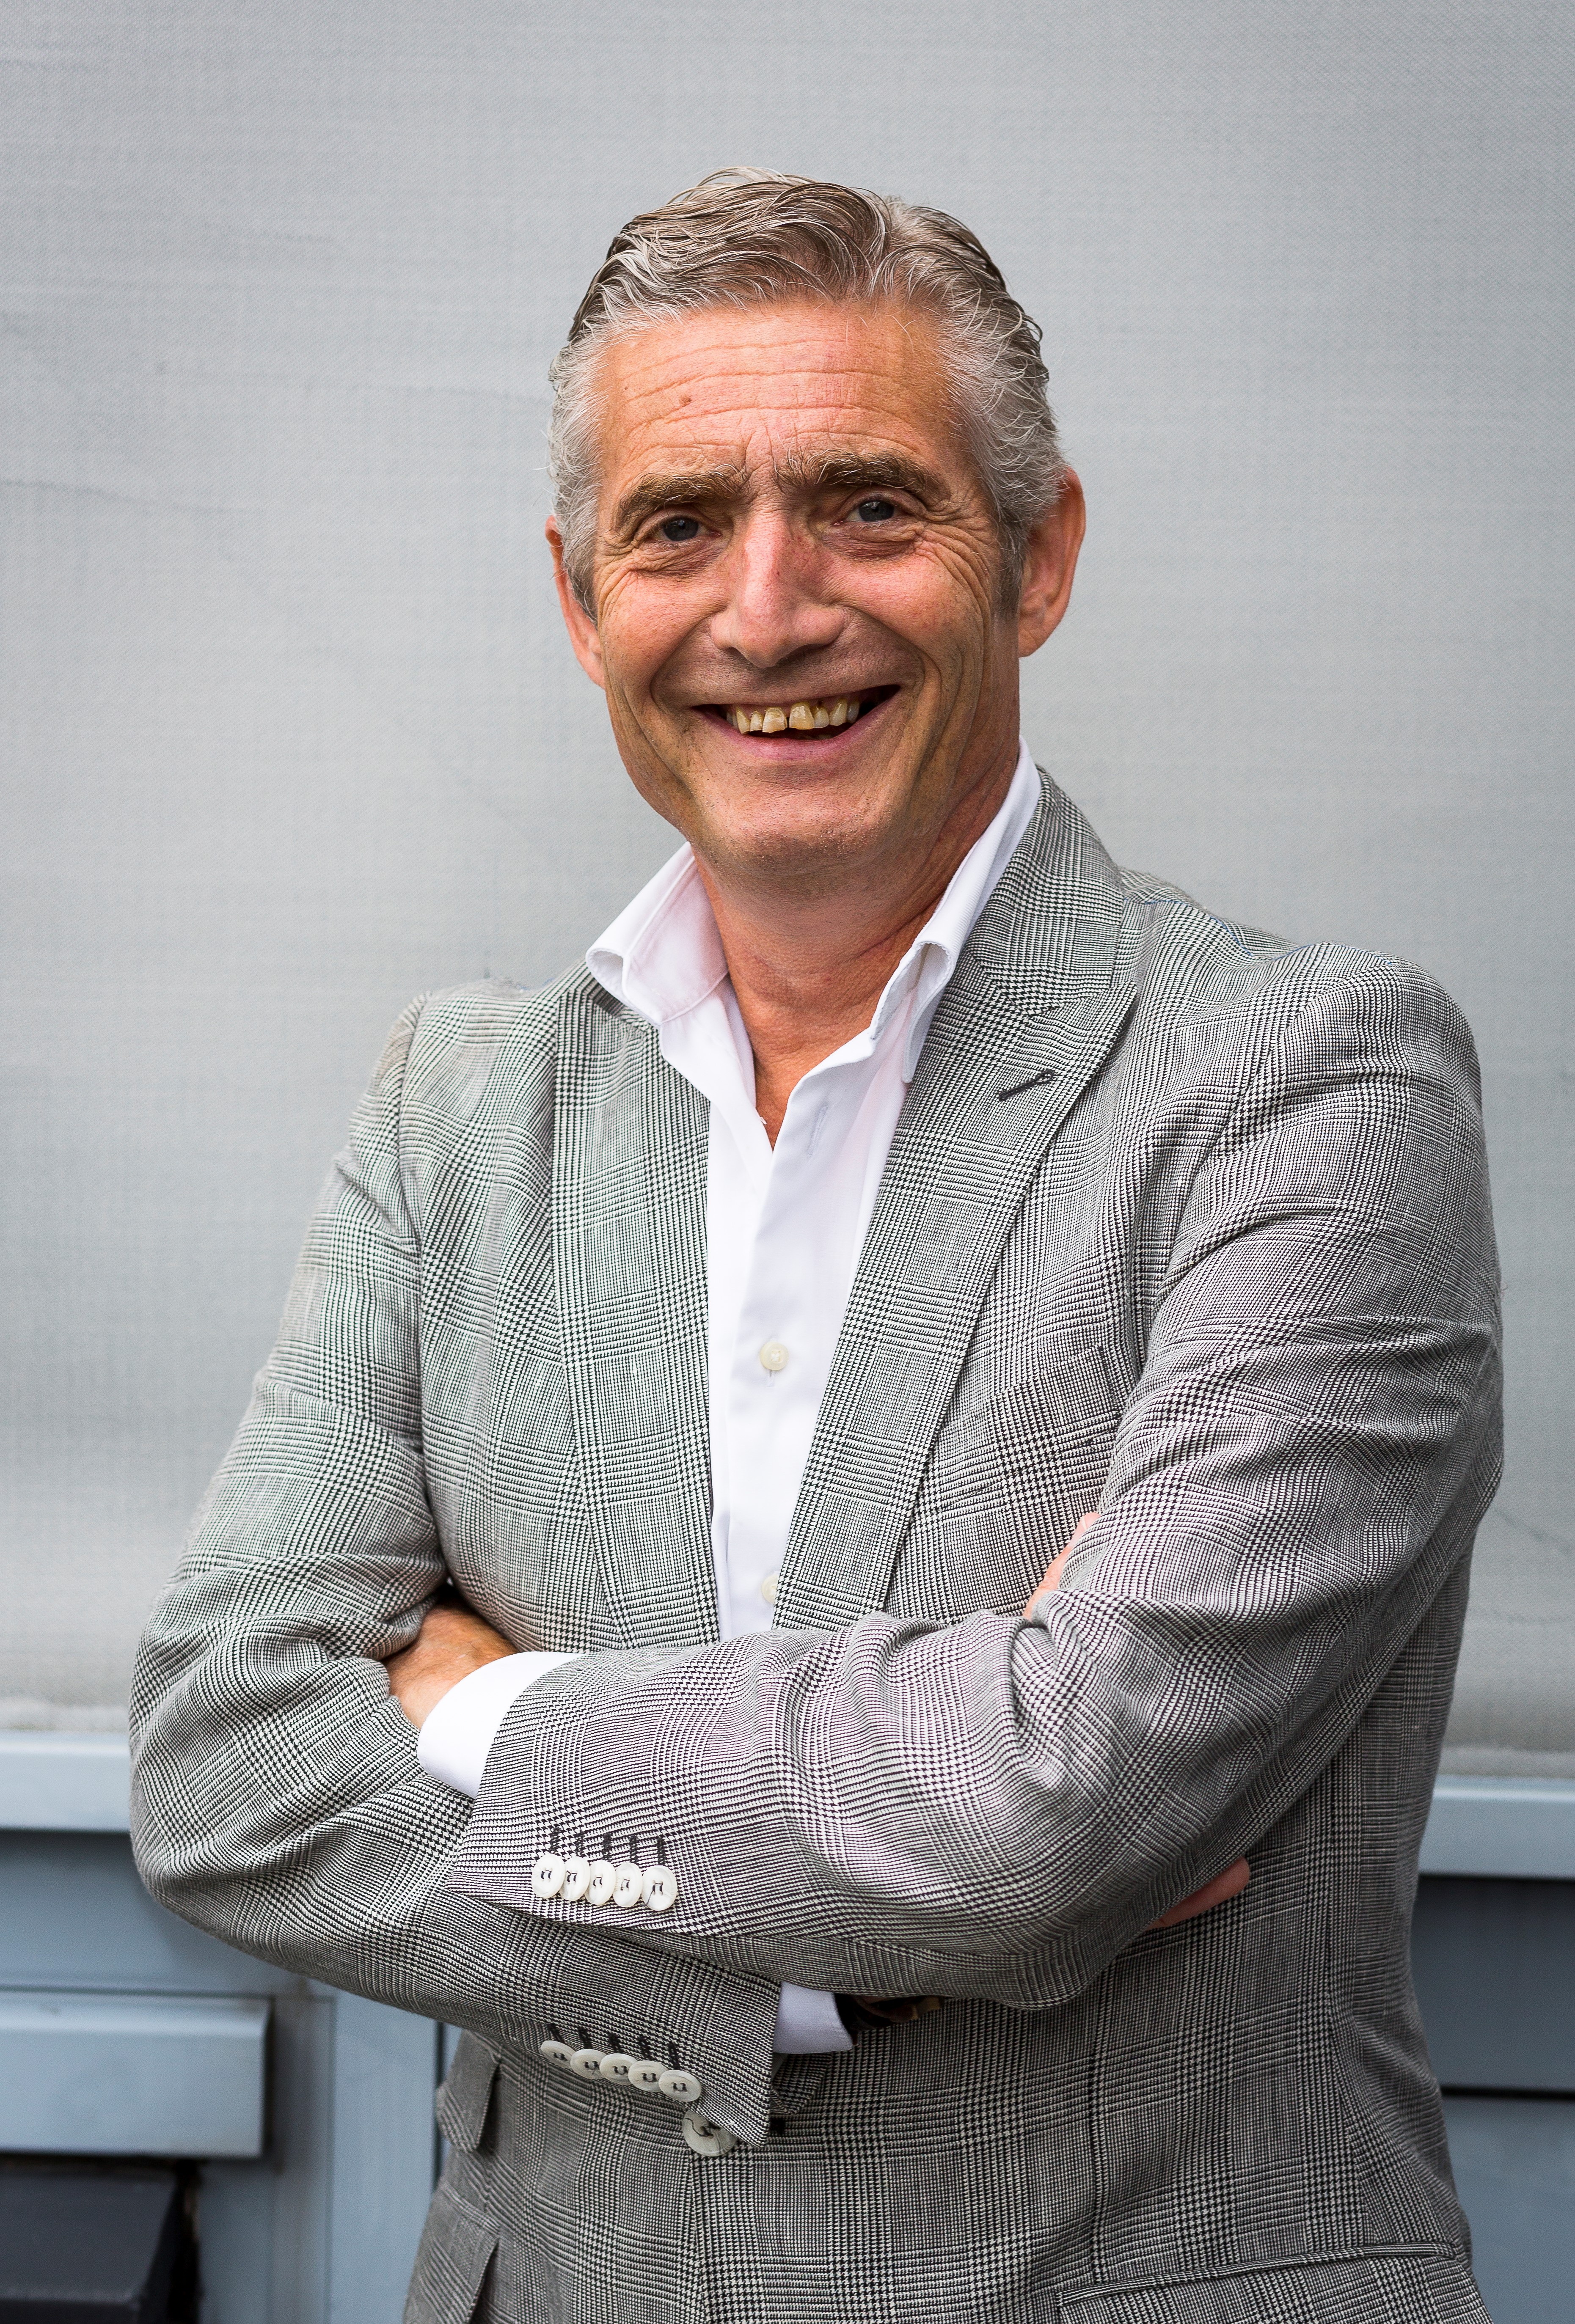 Leo van de Polder, MaRC-Global Development Director for Shop